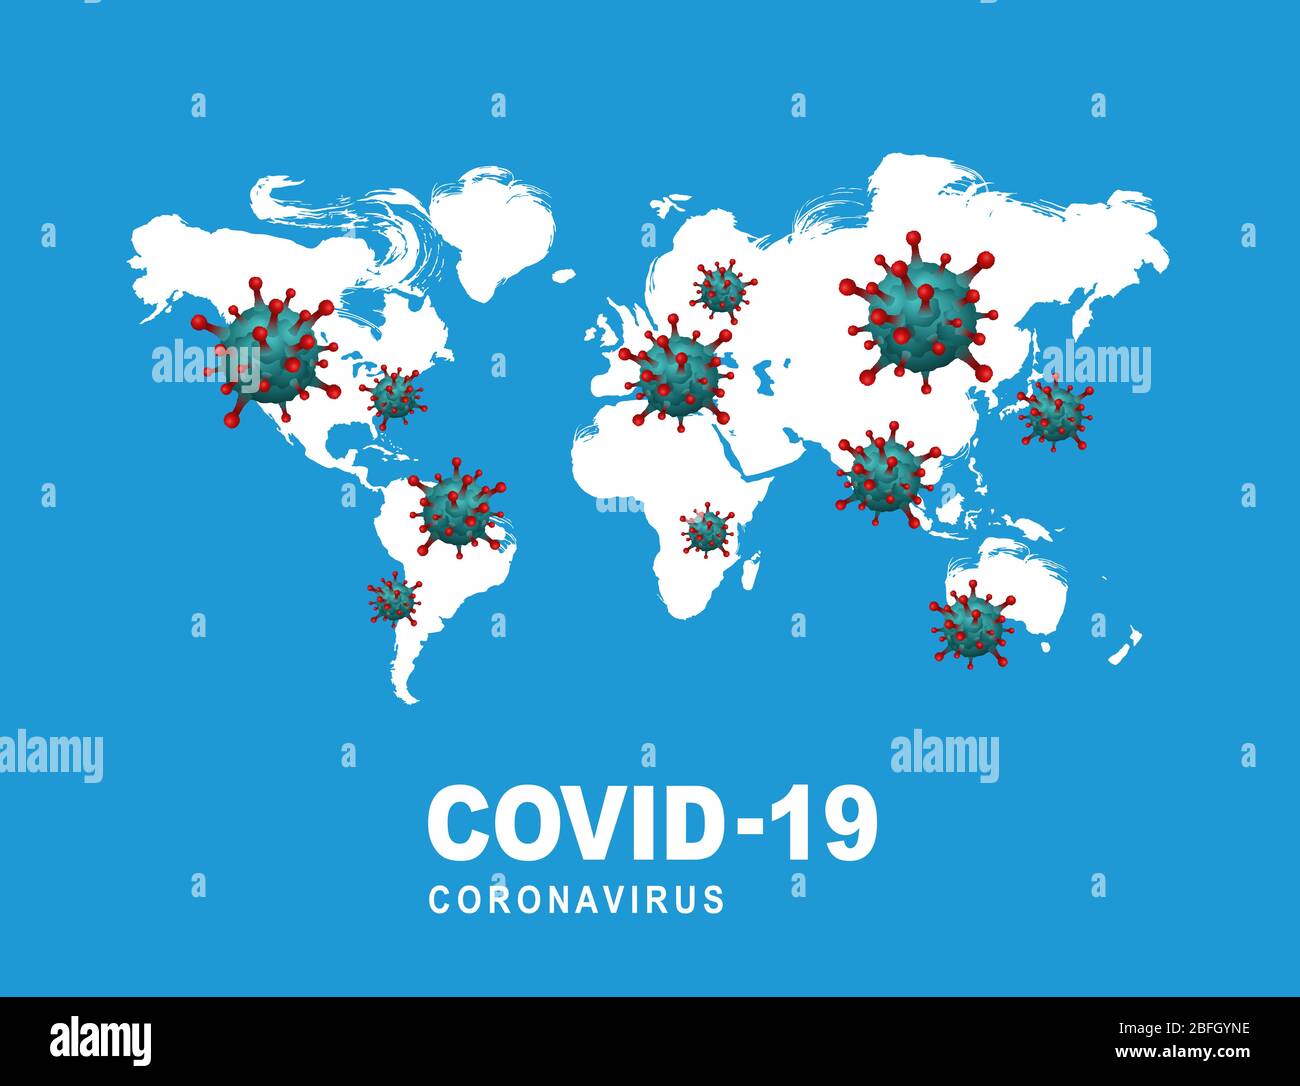 Covid-19 est répandu dans le monde entier et représente une carte mondiale qui fluctue en raison du risque de coronavirus. Illustration de Vecteur